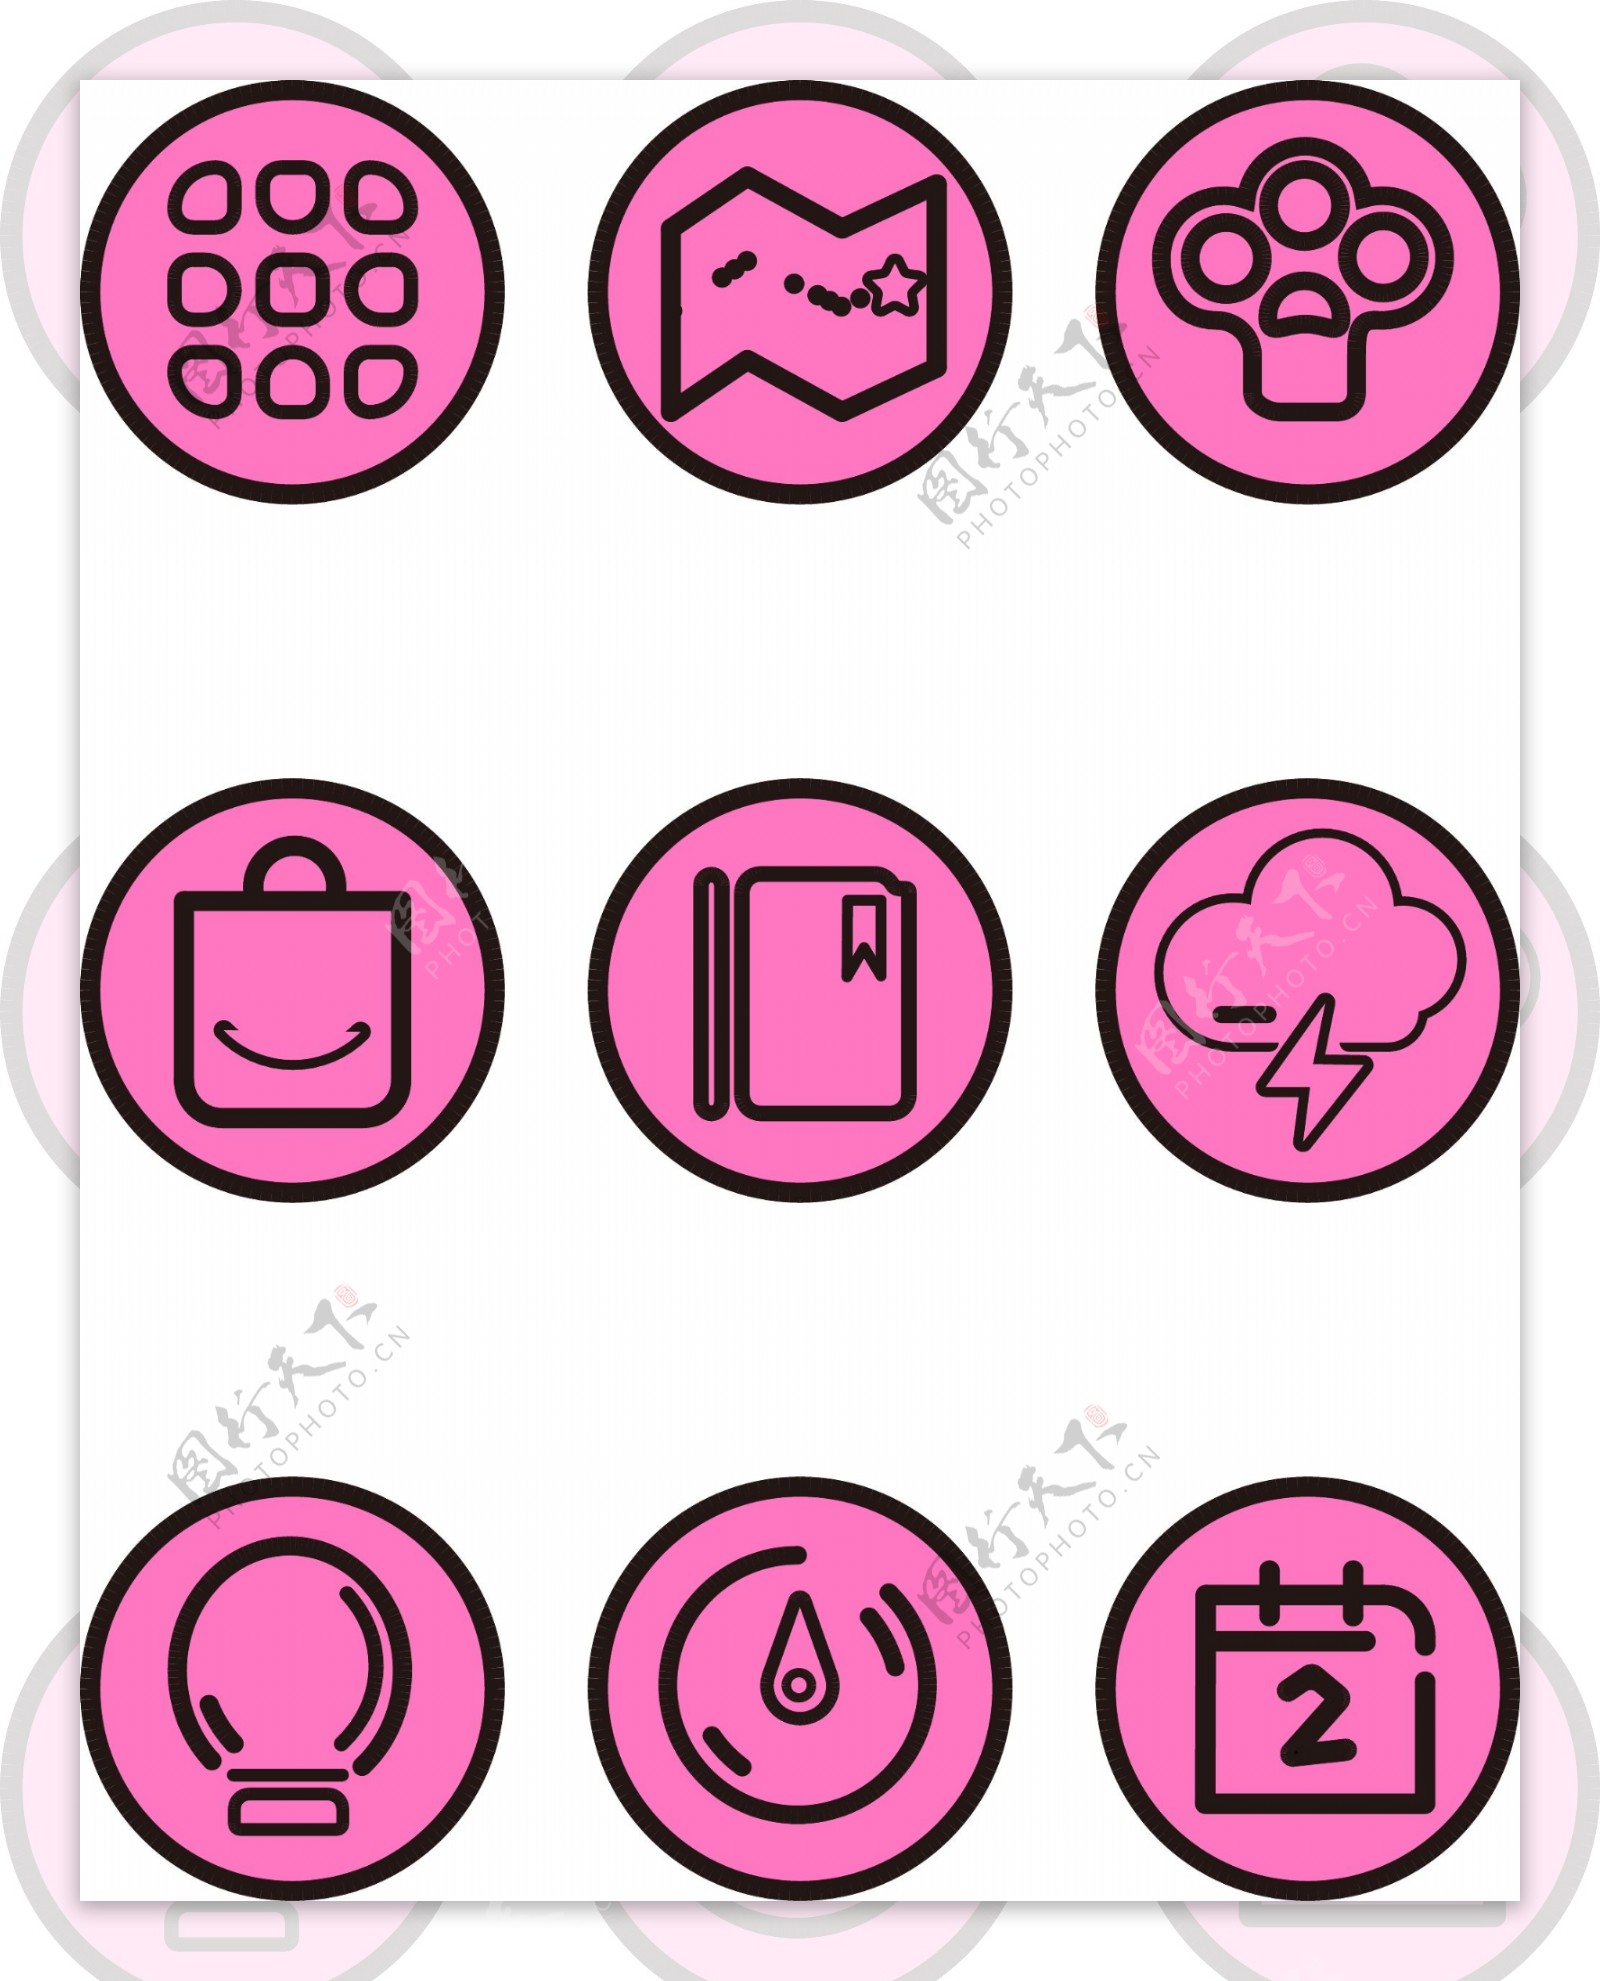 手机主题粉色卡通APP手机小图标素材